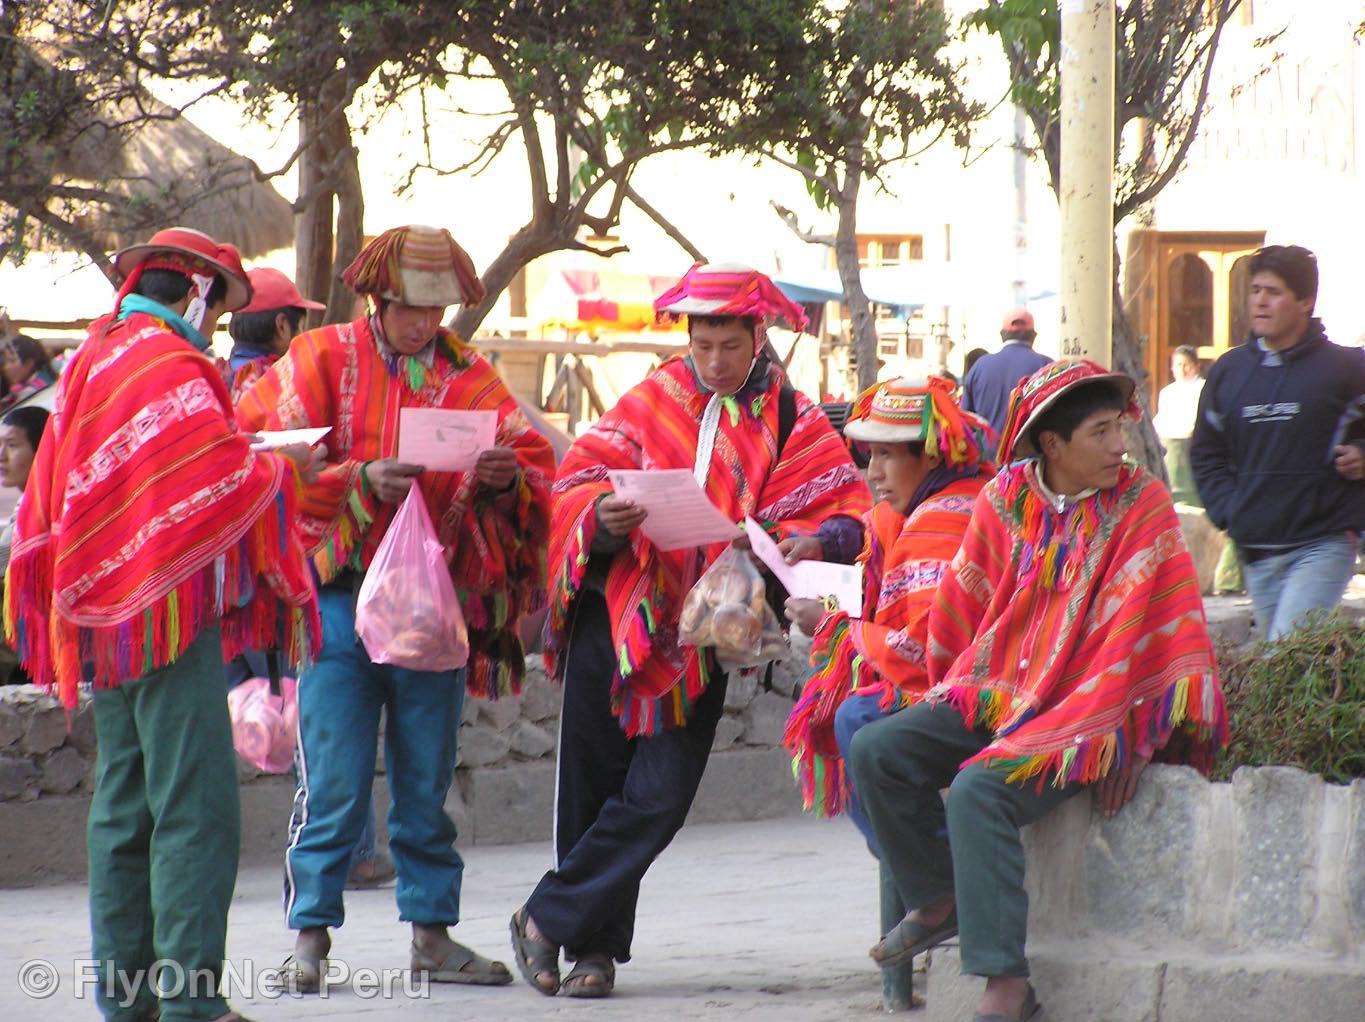 Photo Album: Cuzco